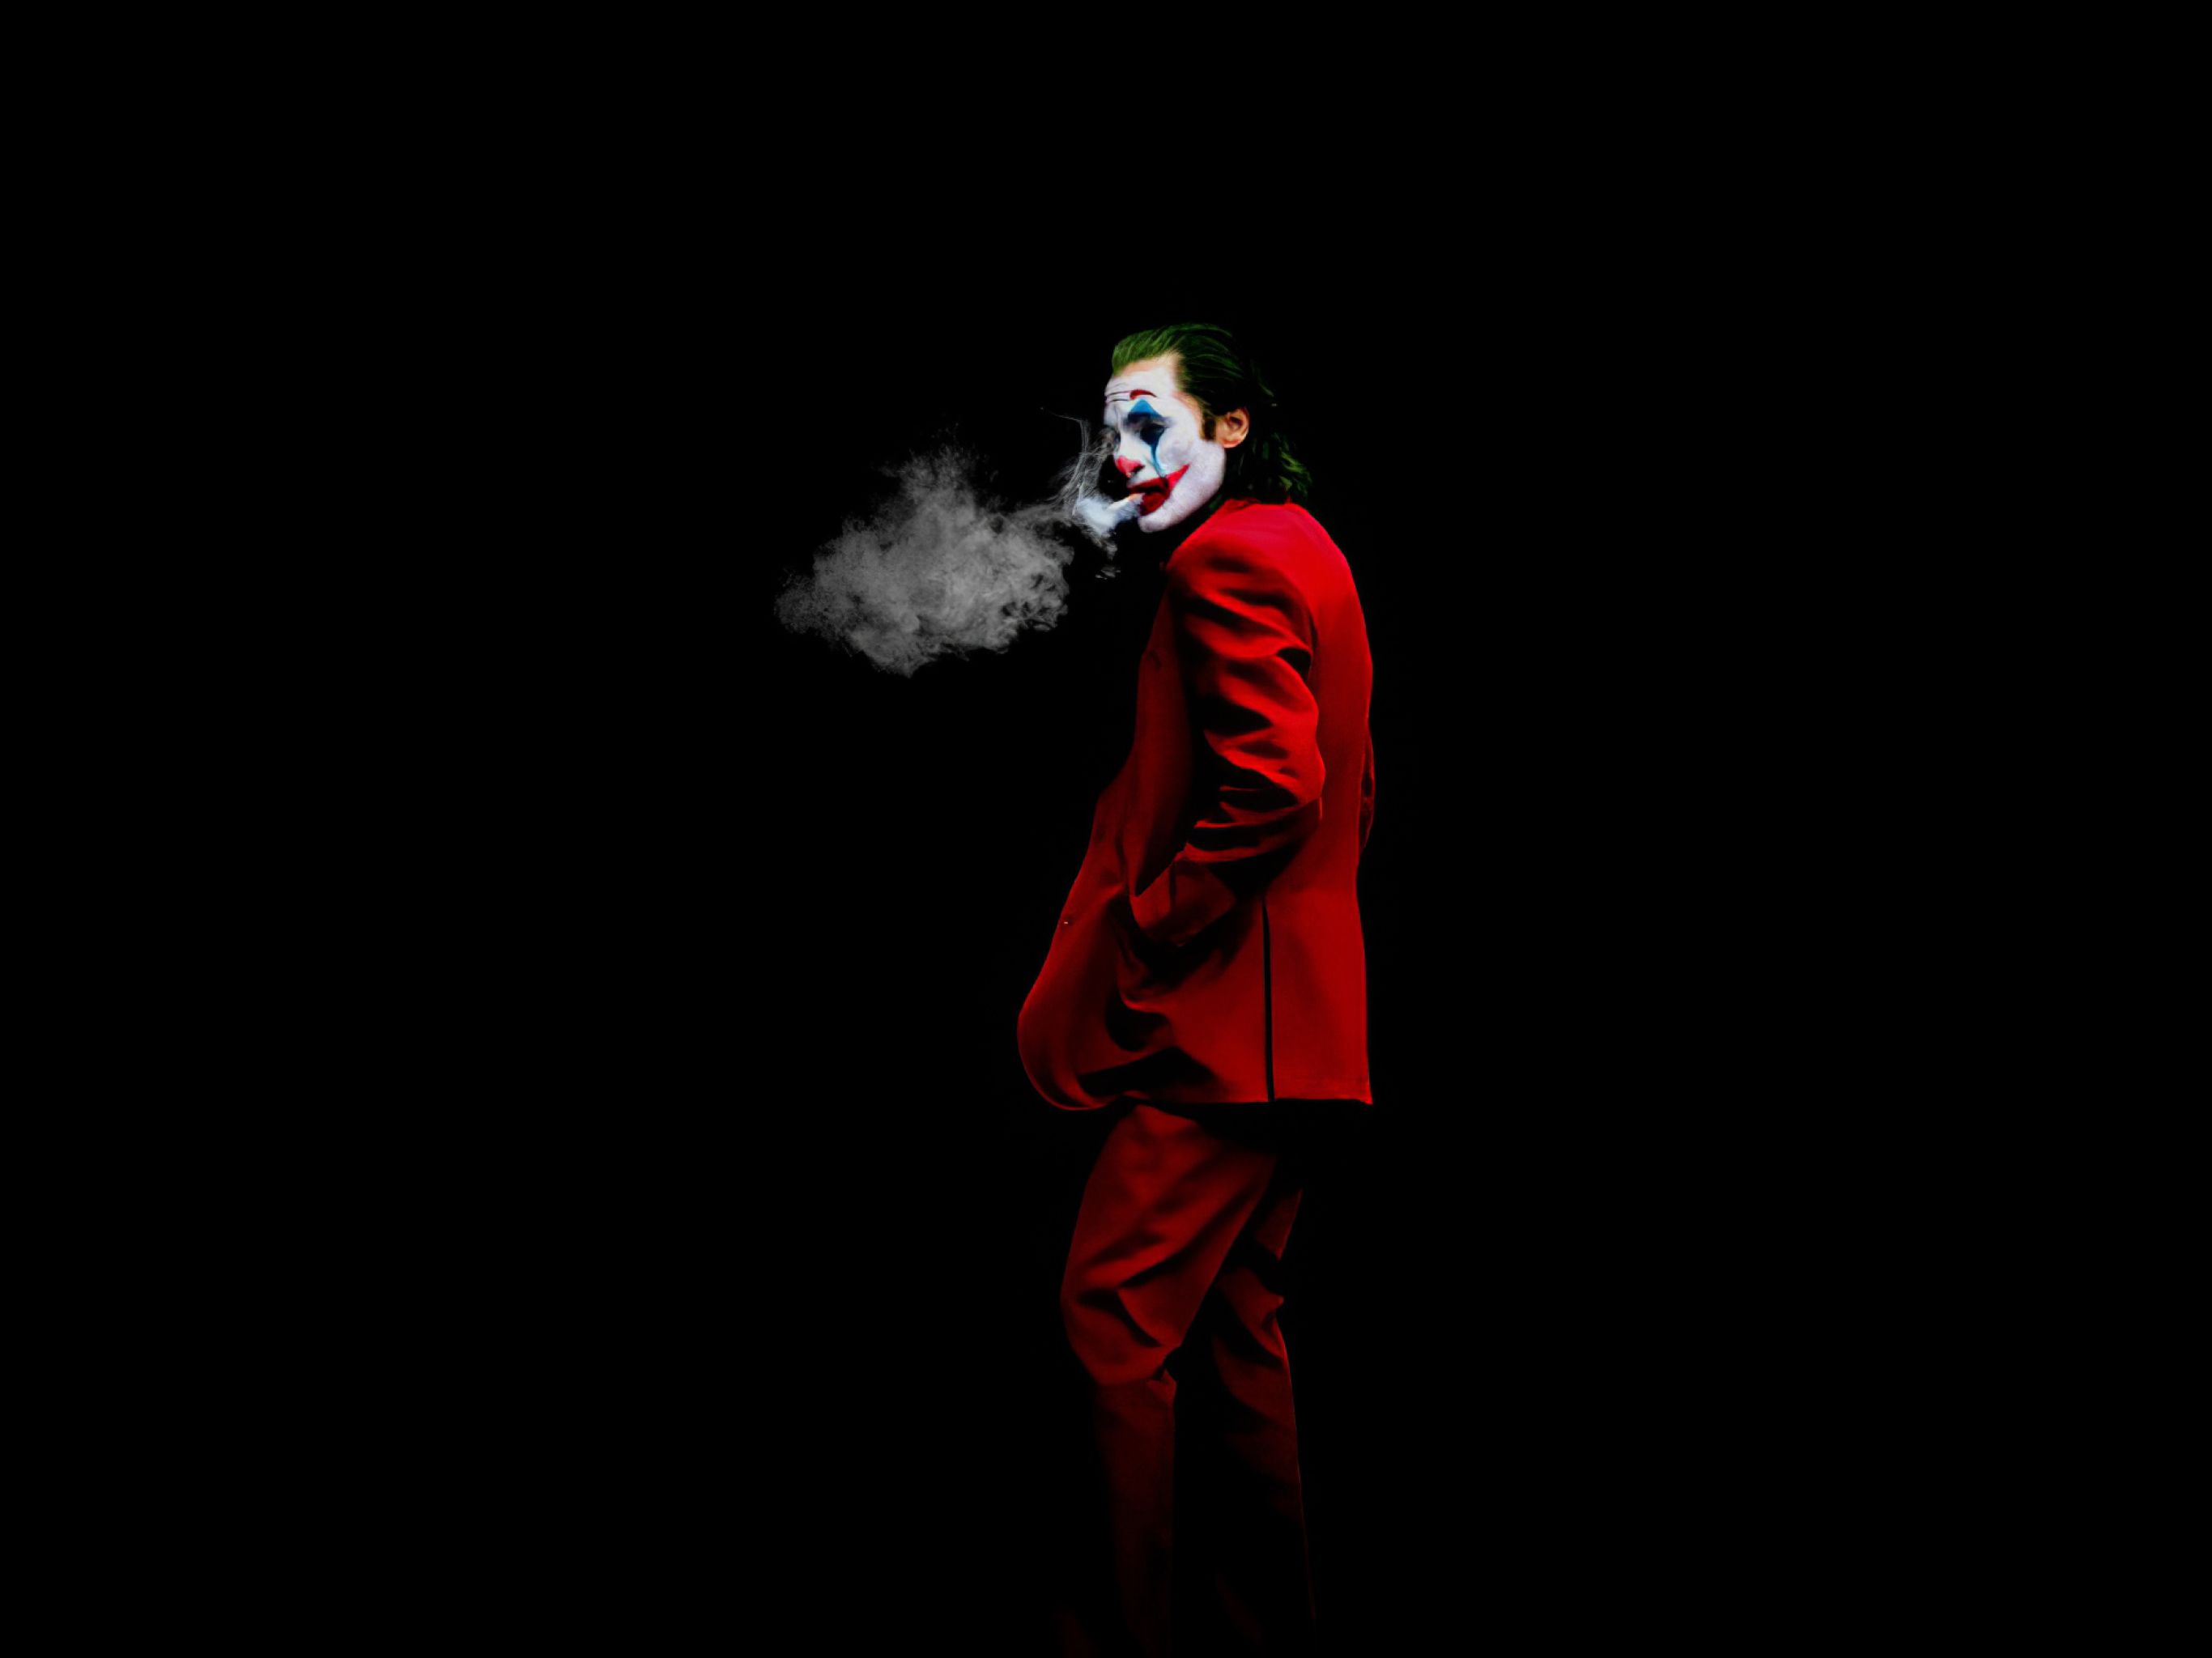 Joker is still smoking Weed - Wallpaper Cave